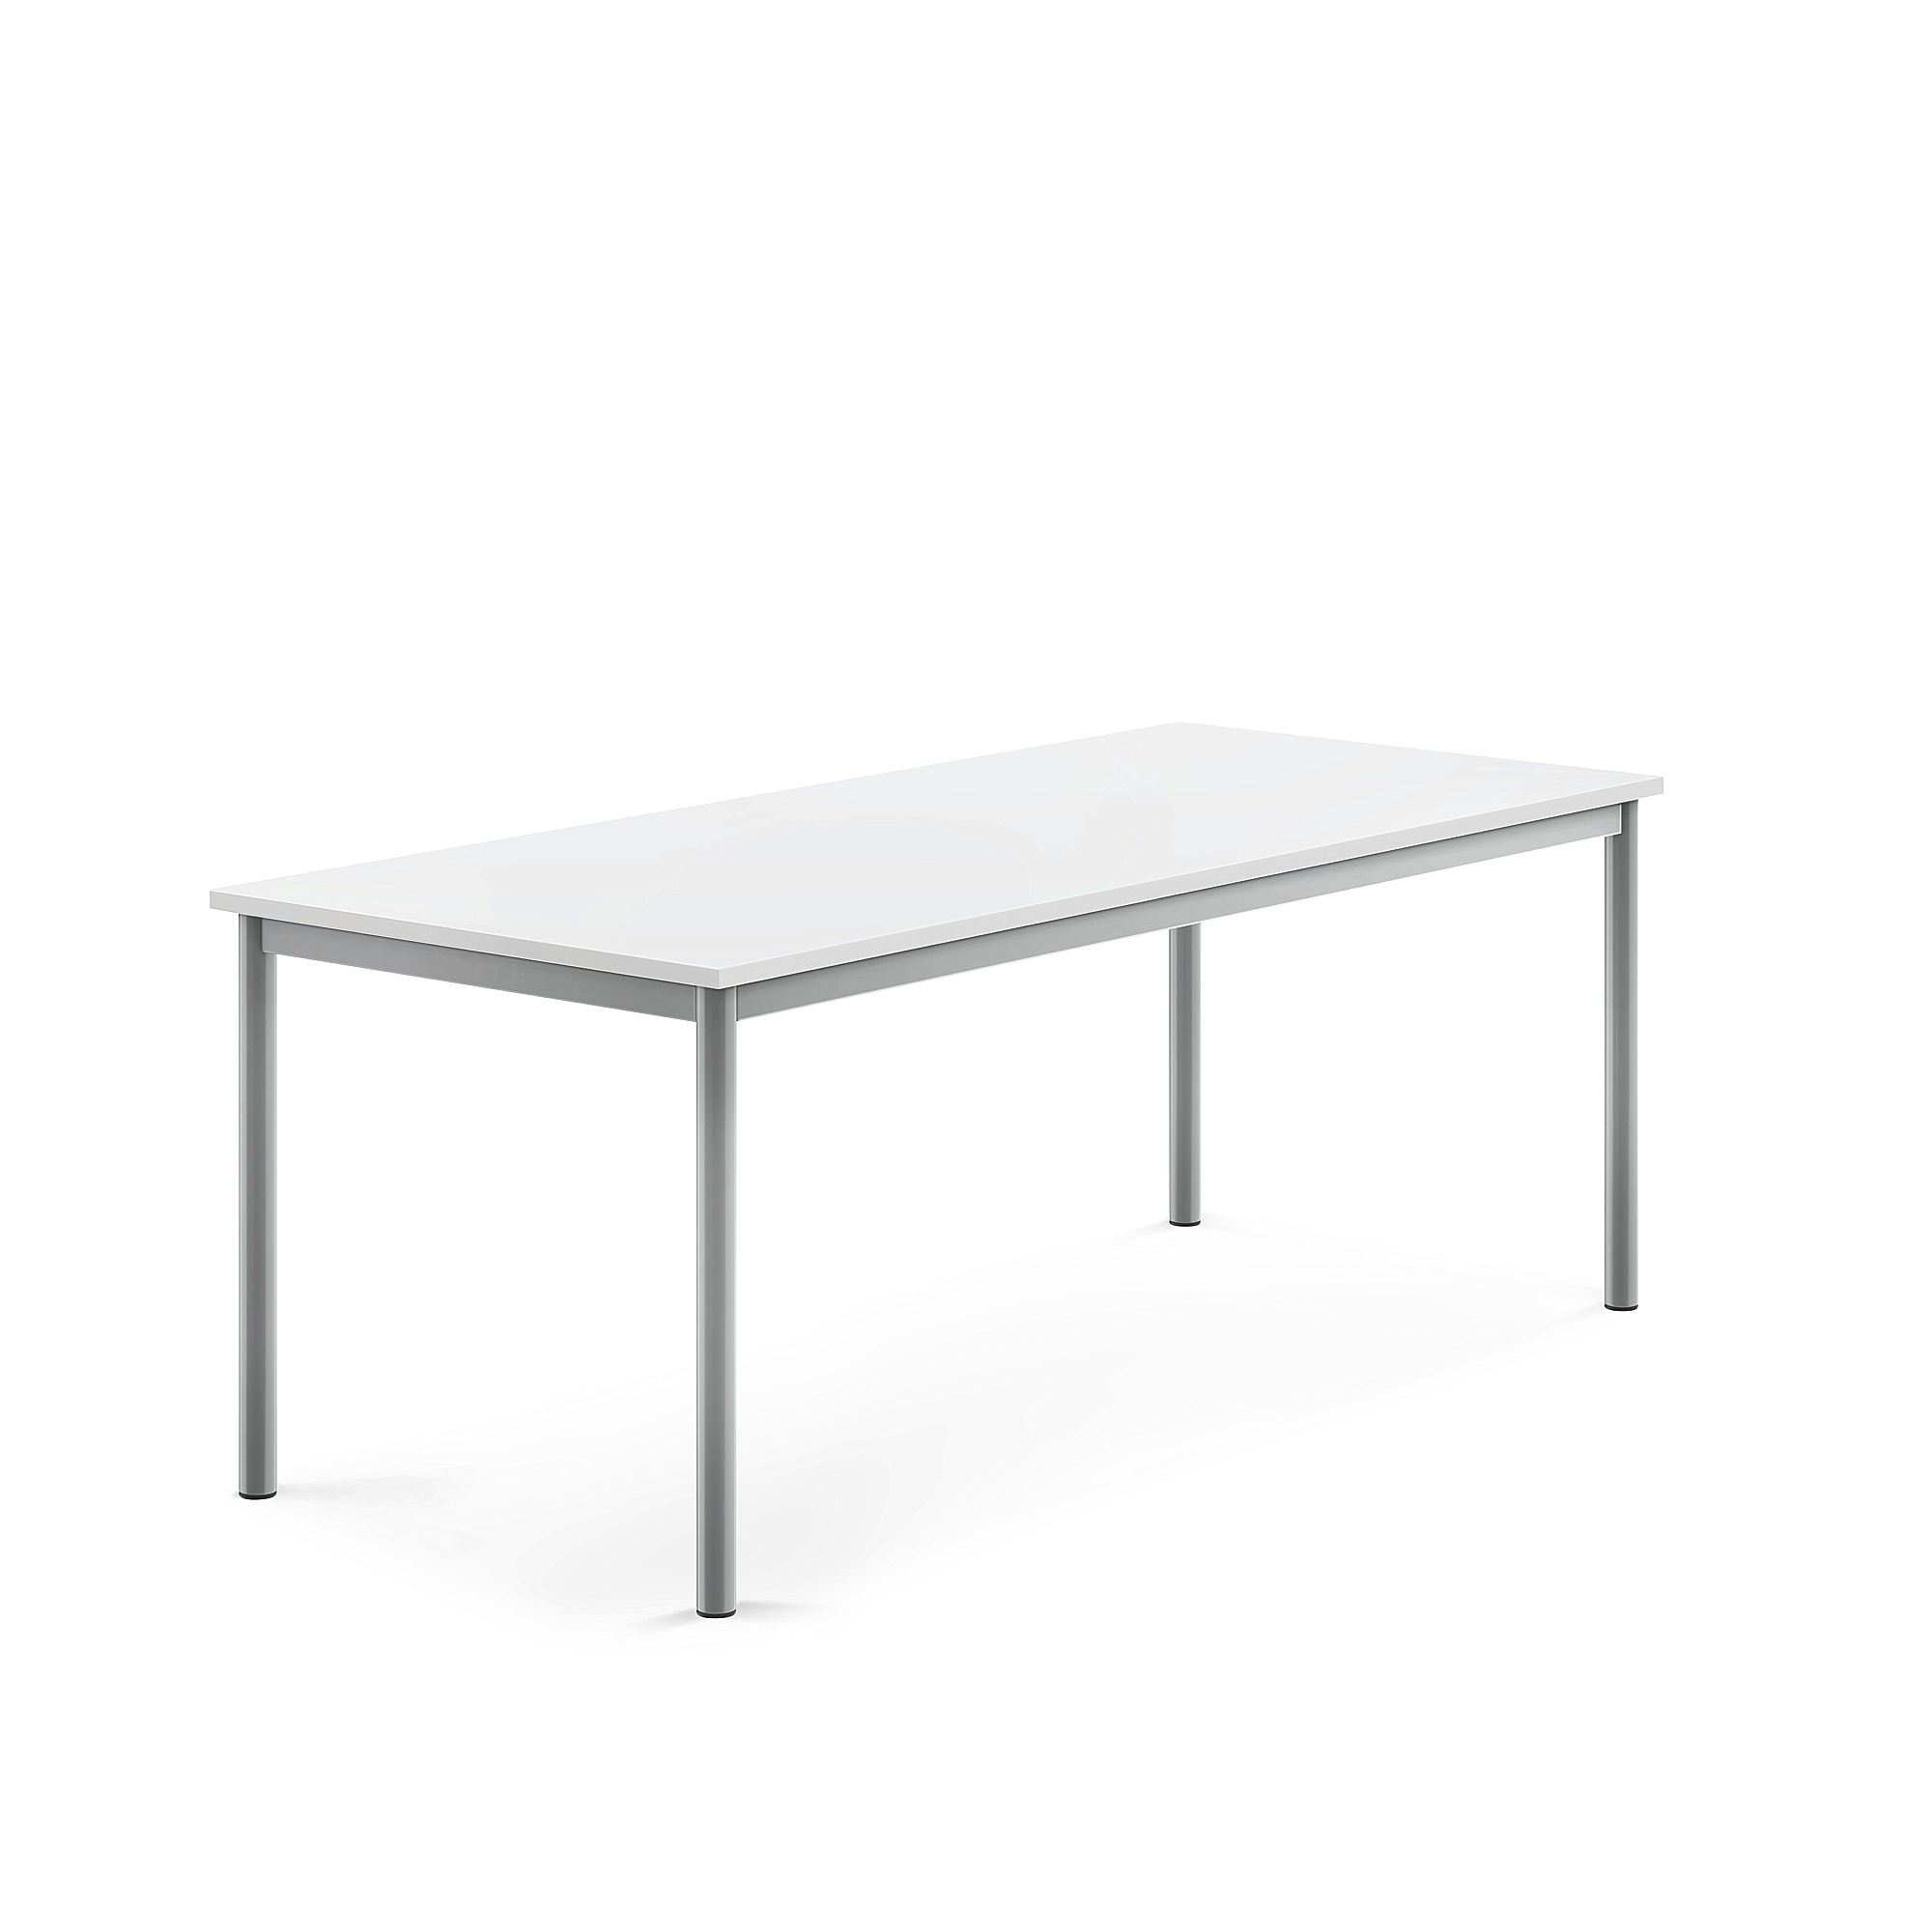 Stůl BORÅS, 1600x700x600 mm, stříbrné nohy, HPL deska, bílá